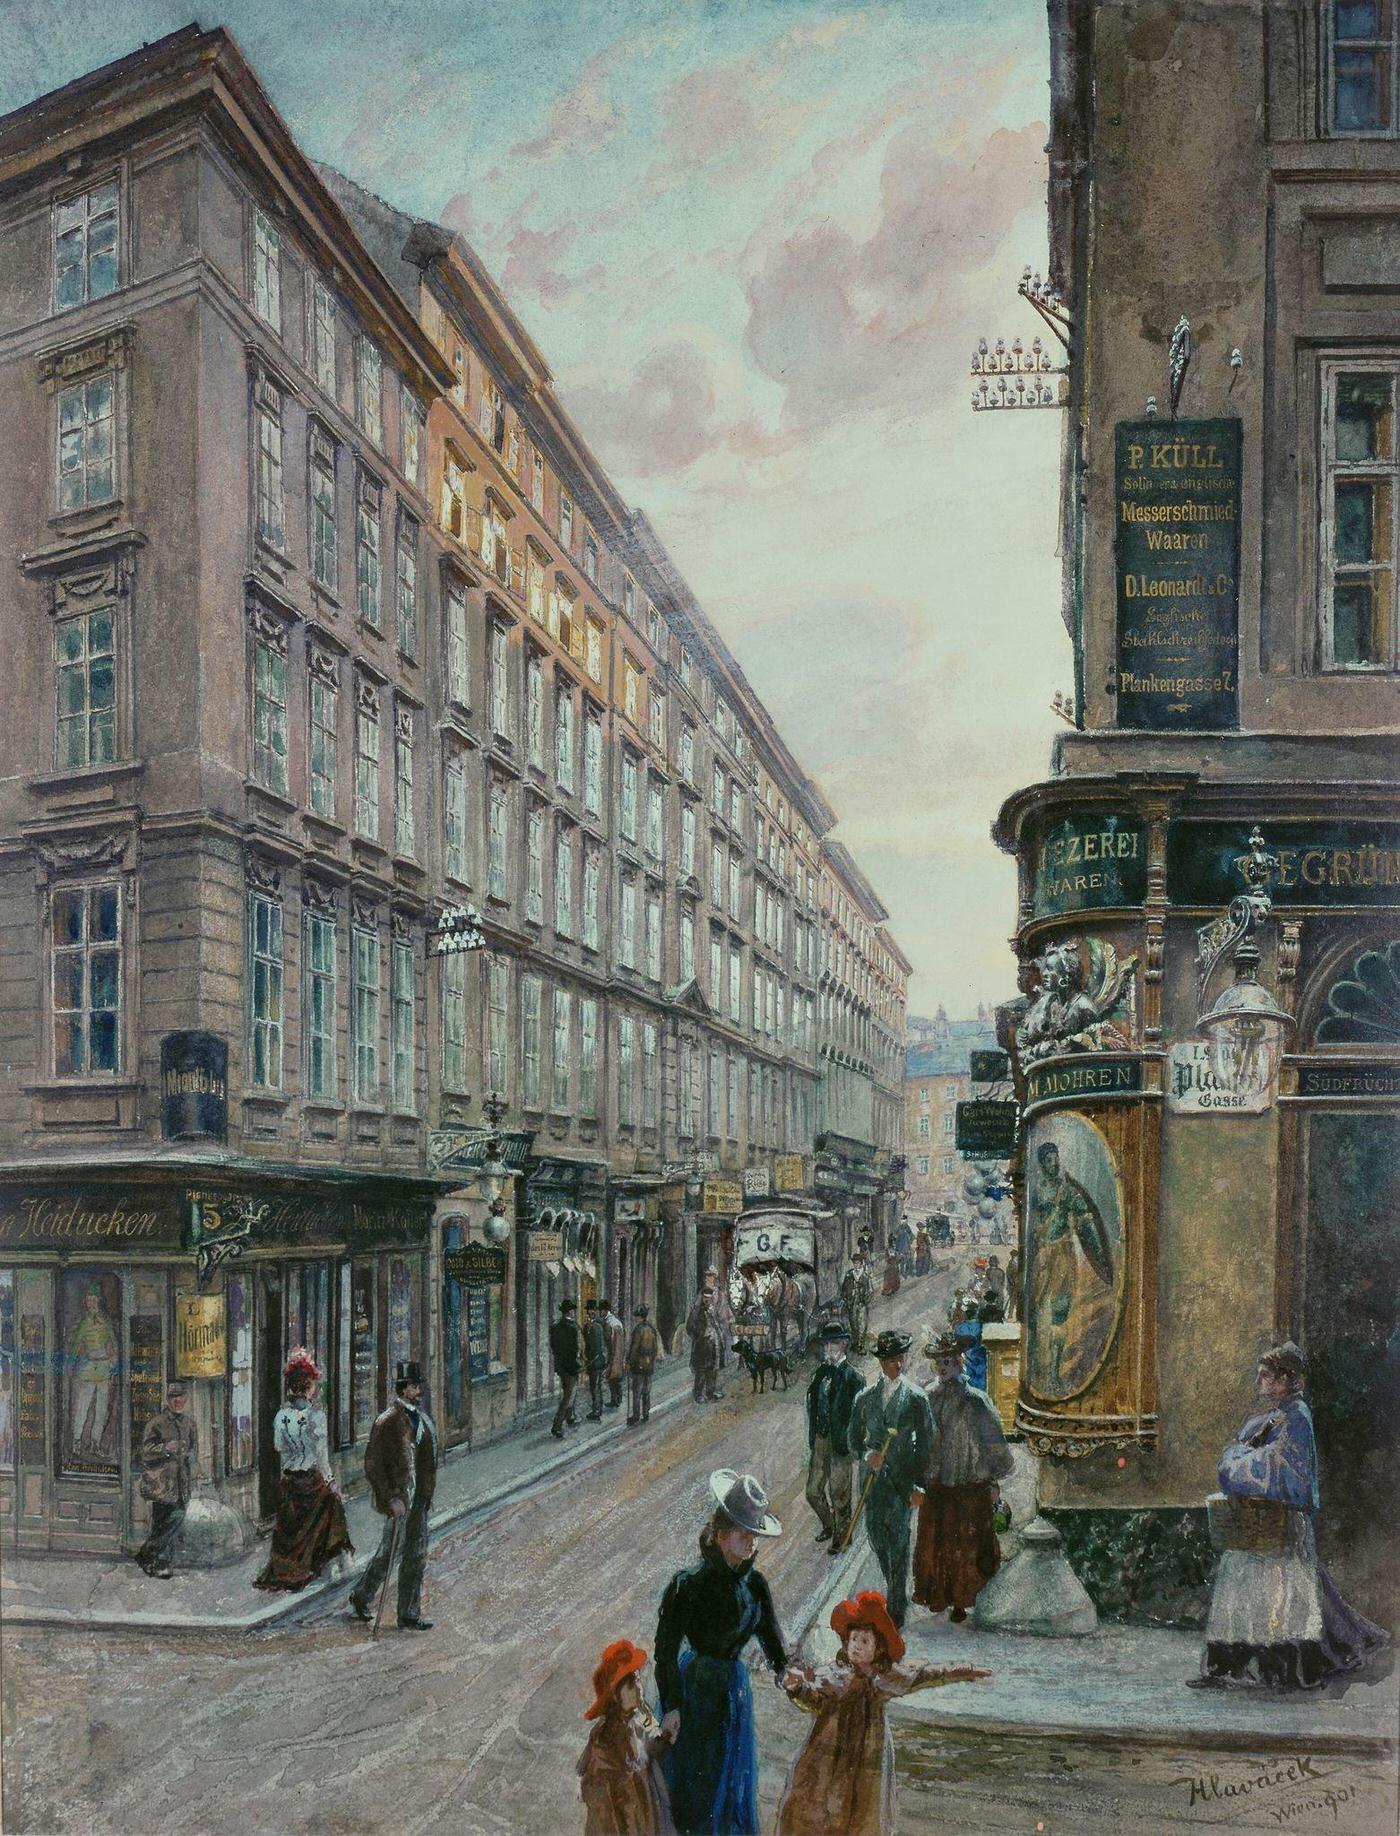 Spiegelgasse in downtown Vienna, 1901.